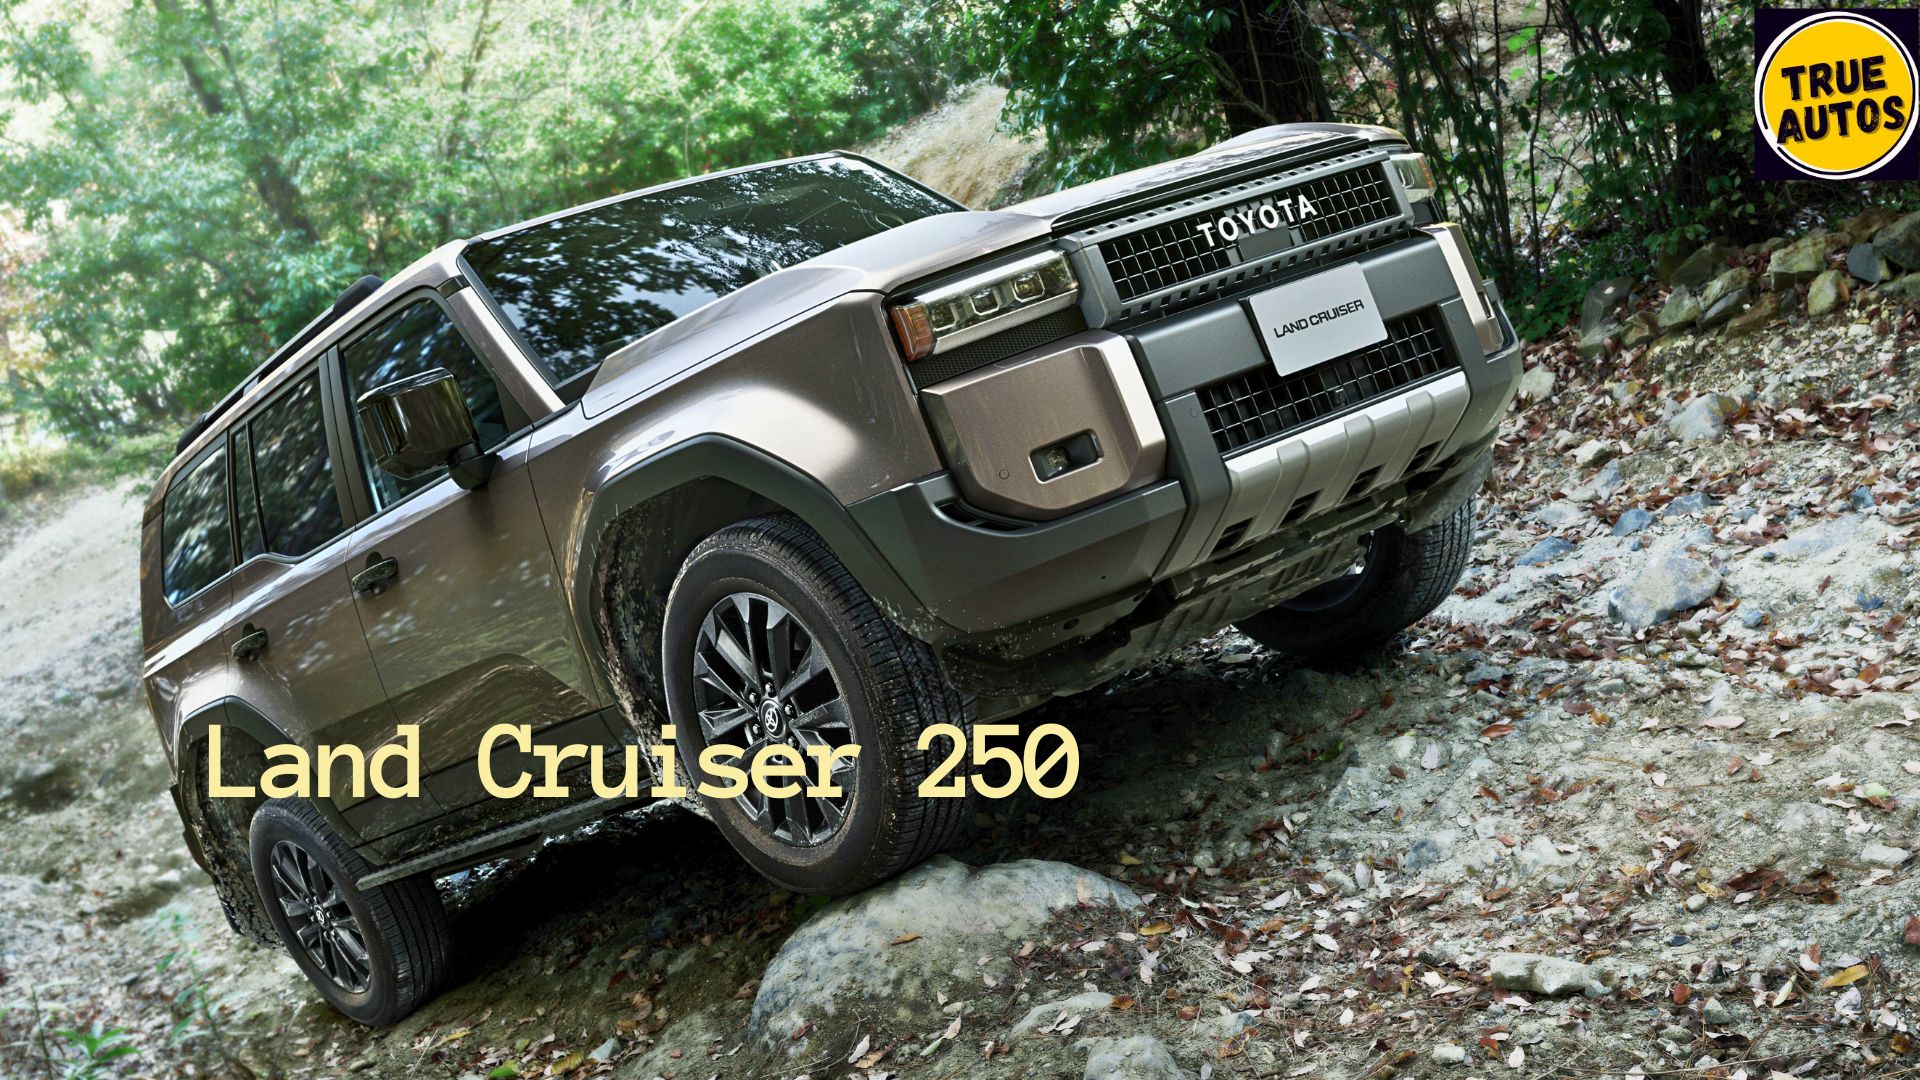 Land Cruiser 250 series